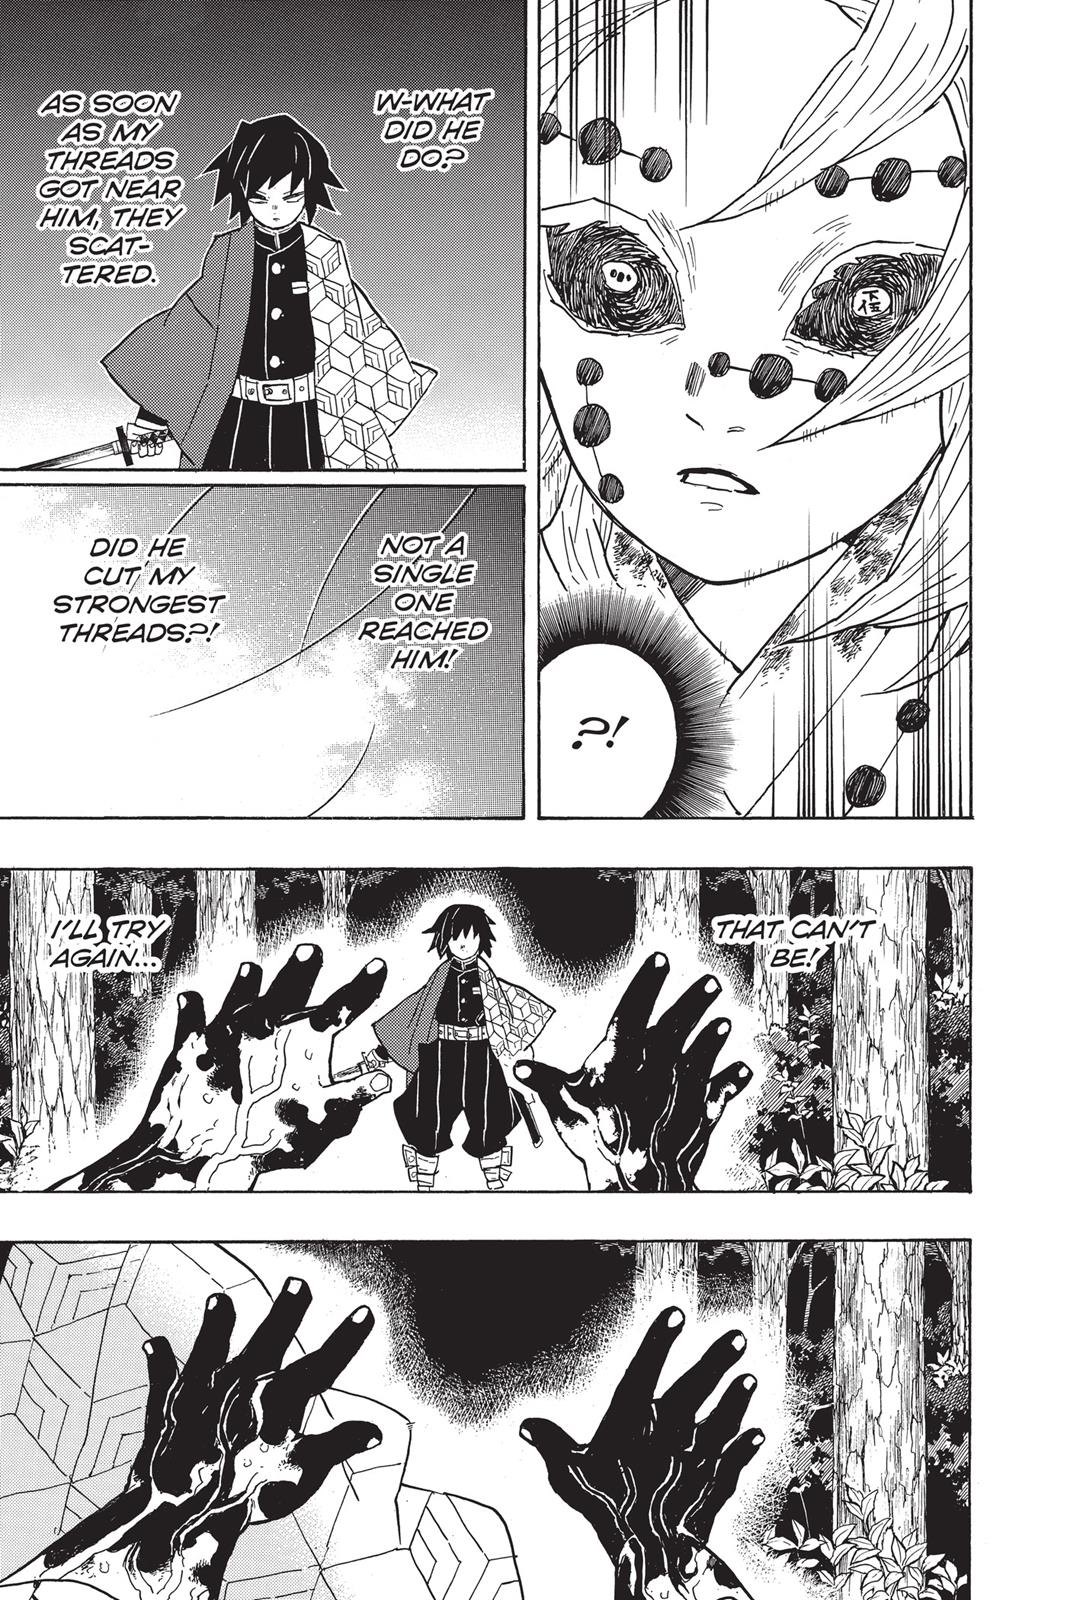 Demon Slayer Manga Manga Chapter - 42 - image 14